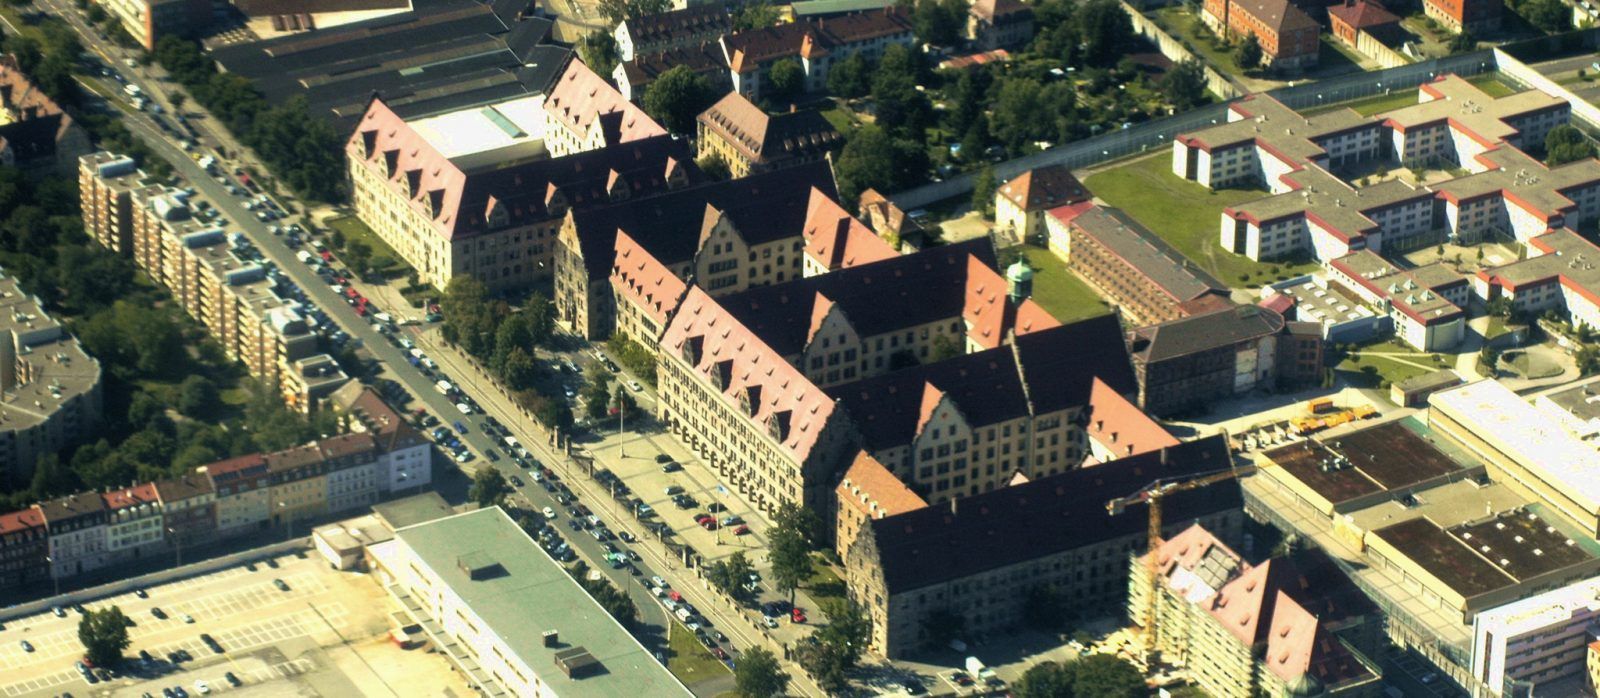 Нюрнберг — город на севере немецкой земли Бавария, известный средневековыми сооружениями, среди которых крепостные укрепления и каменные башни в Альтштадте (Старый город). На территории Нюрнбергской крепости, расположенной на северной окраине Альтштадта, находится Императорский замок, окруженный зданиями с красными крышами. На площади Хауптмаркт (Центральная площадь) можно осмотреть позолоченный фонтан Шёнер-Бруннен (Прекрасный фонтан) с несколькими статуями, установленными на разных уровнях, и церковь Фрауэнкирхе XIV века в готическом стиле...